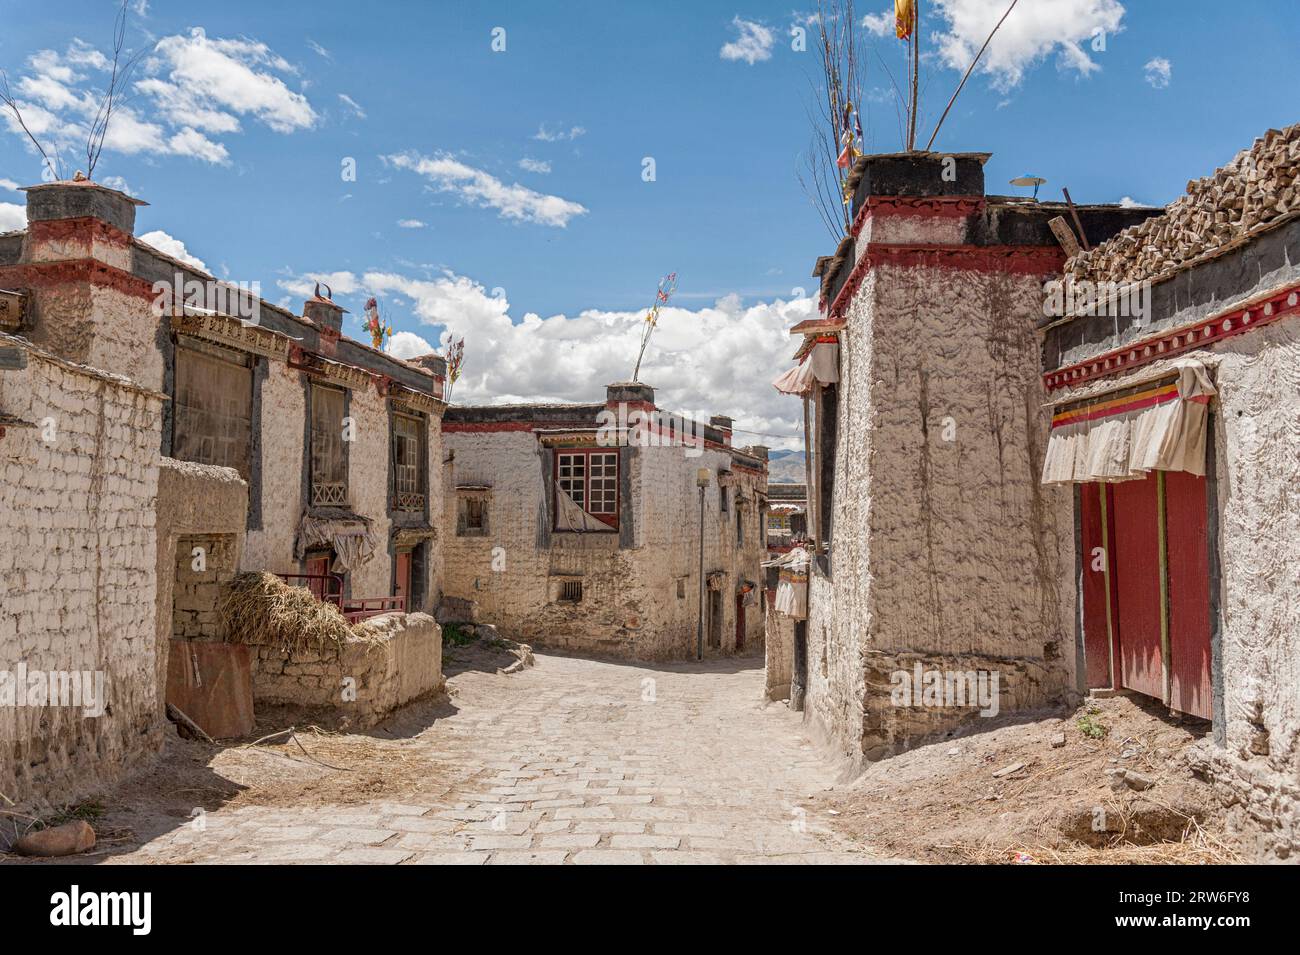 Gyantse gilt historisch als die drittgrößte und wichtigste Stadt in der Autonomen Region Tibet. Stockfoto